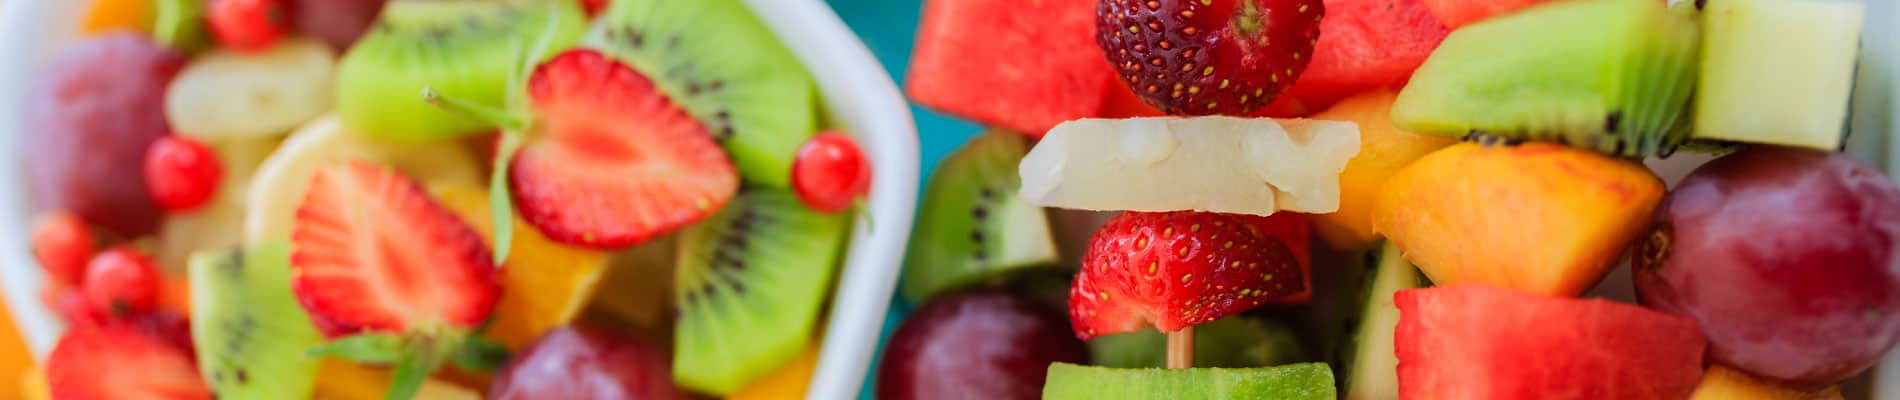 ¿Por qué es bueno comer fruta?